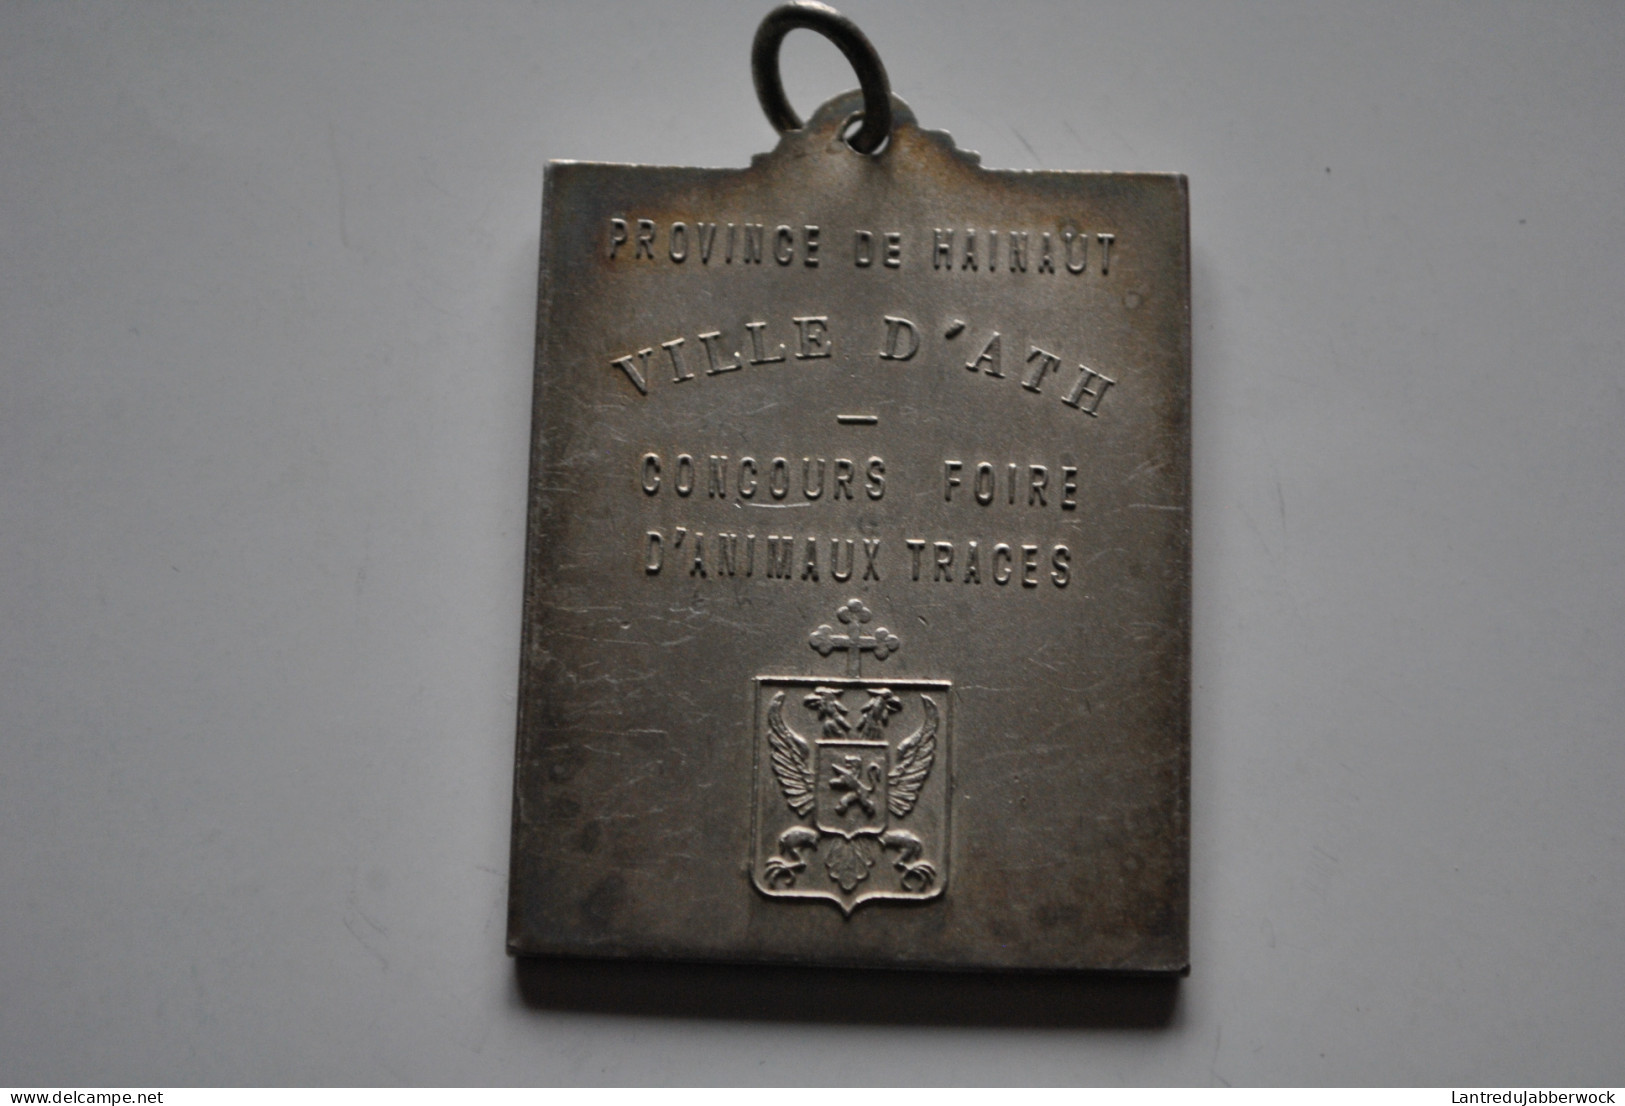 Médaille En Métal Argenté Ville D'Ath Concours Foire D'animaux Traces Armes Armoiries De La (45 X 60 Mm) Beffroi - Tokens Of Communes